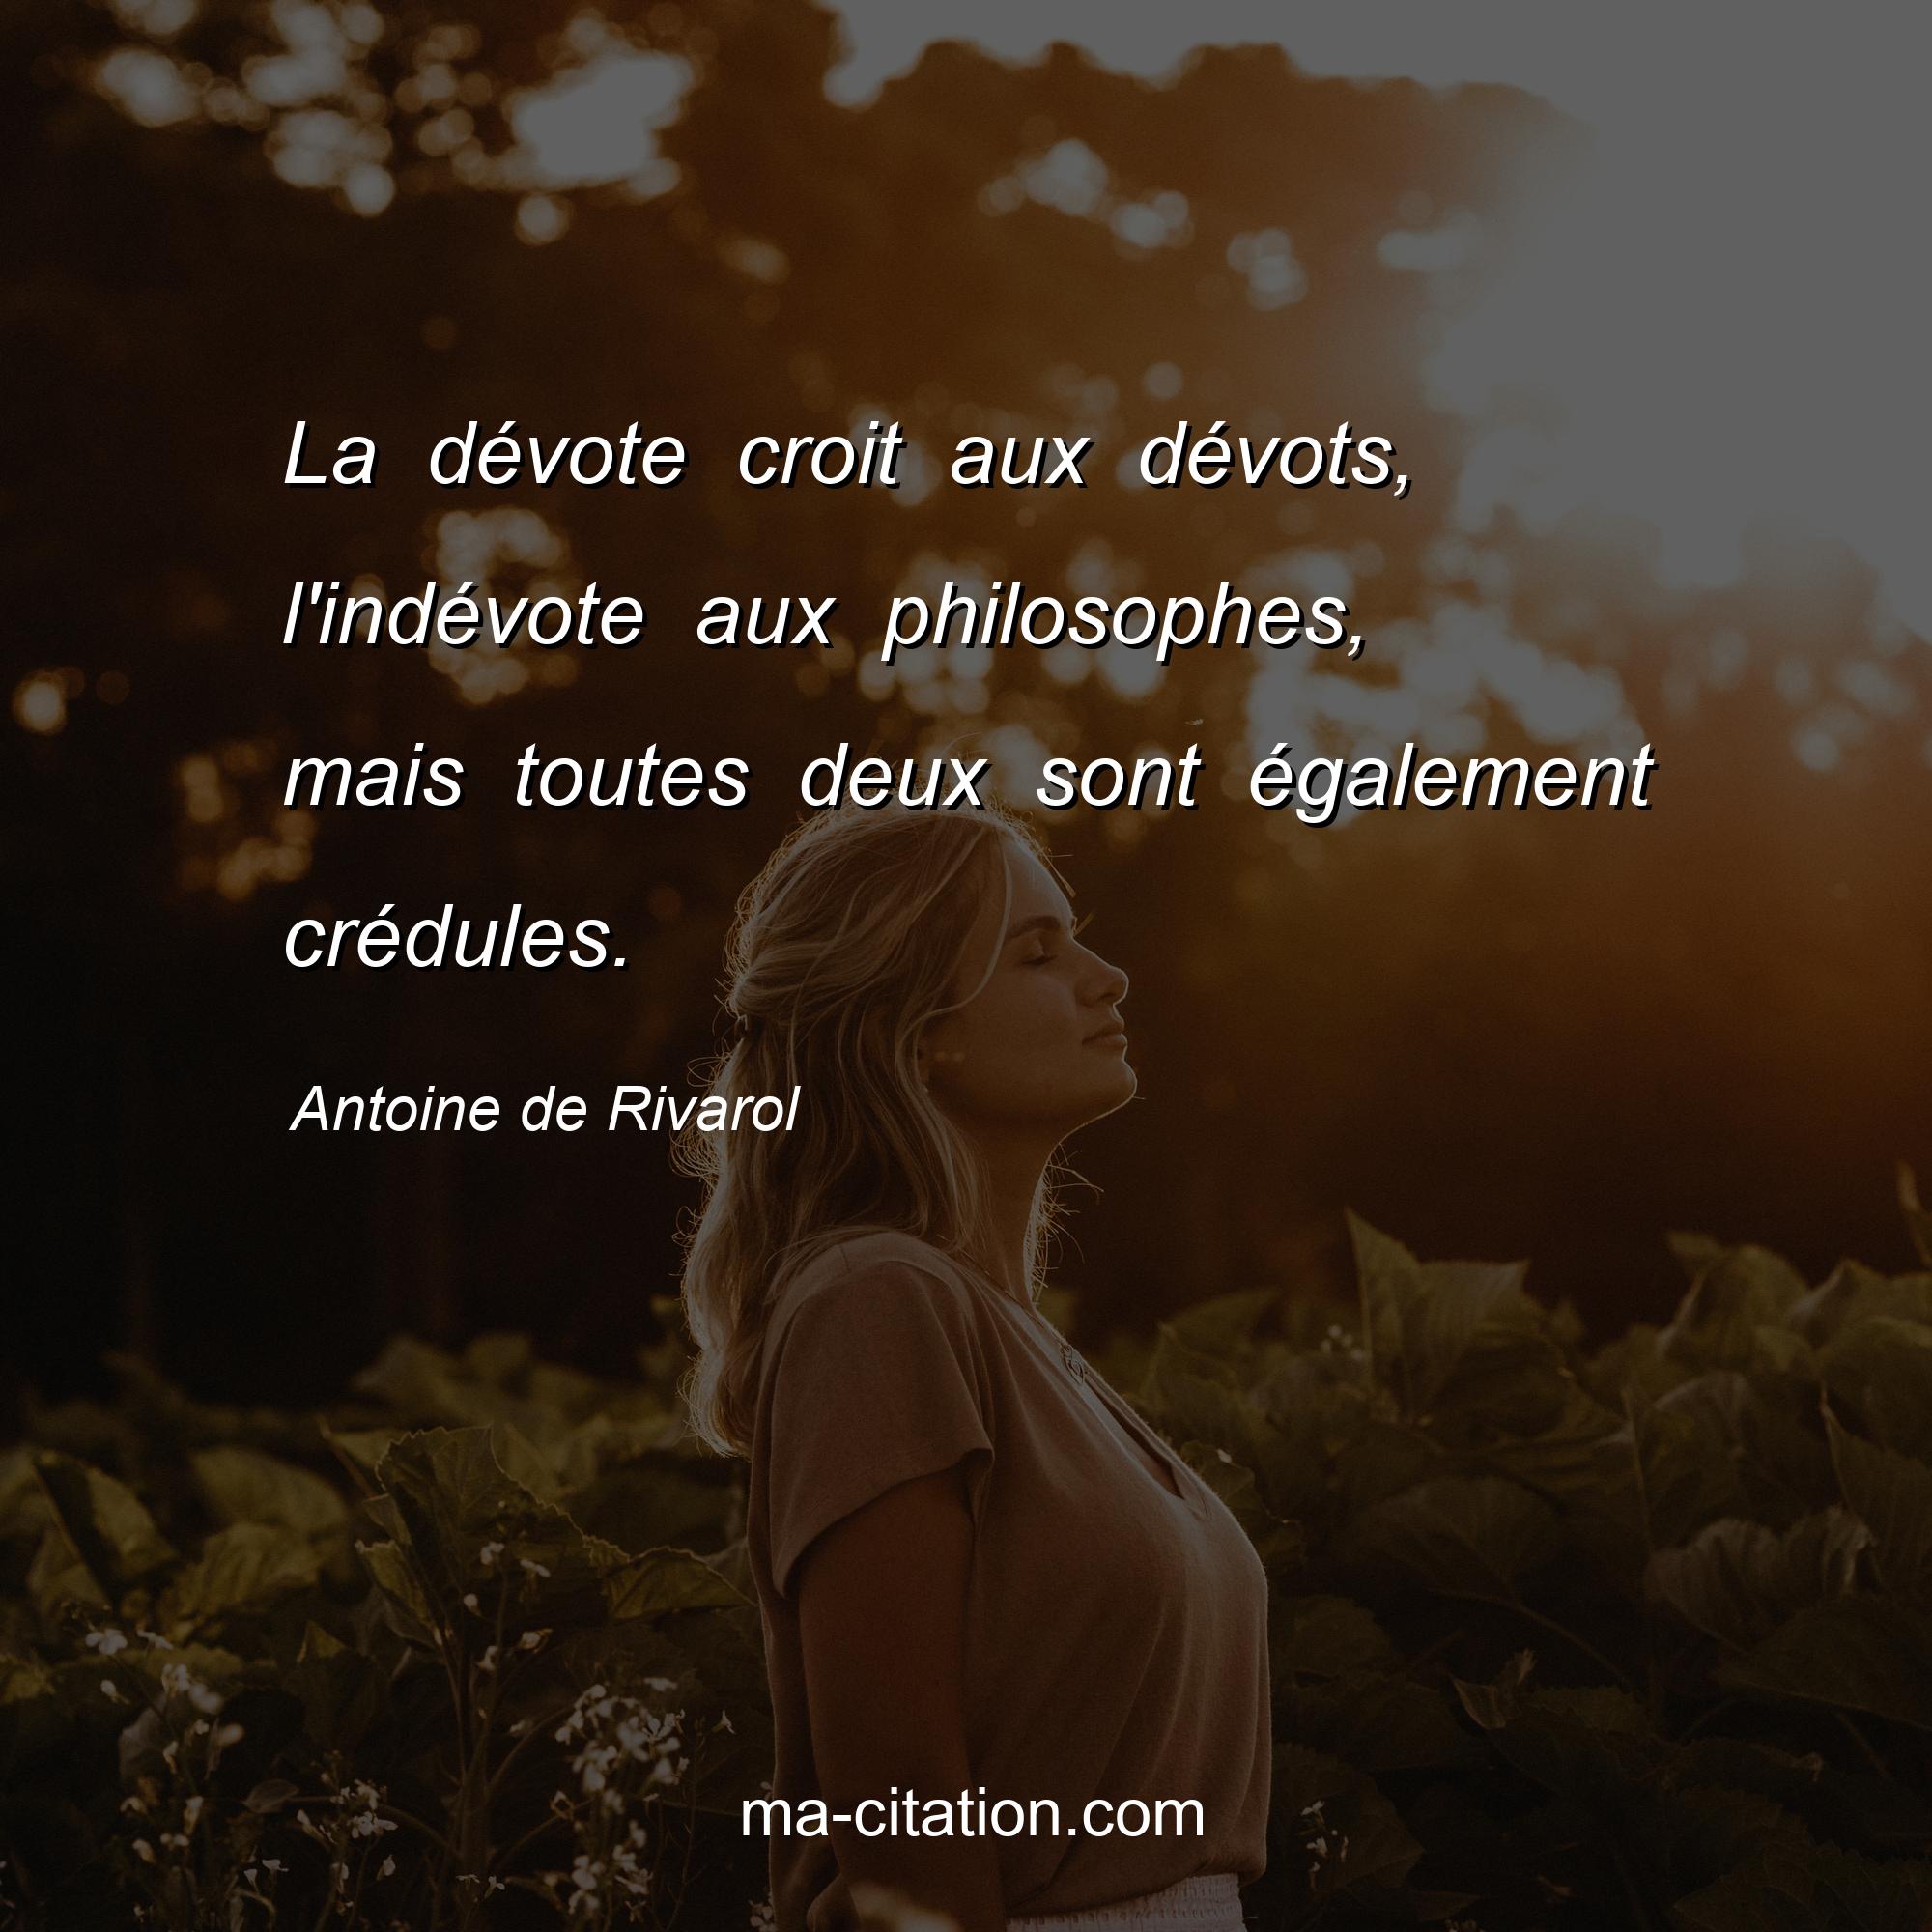 Antoine de Rivarol : La dévote croit aux dévots, l'indévote aux philosophes, mais toutes deux sont également crédules.